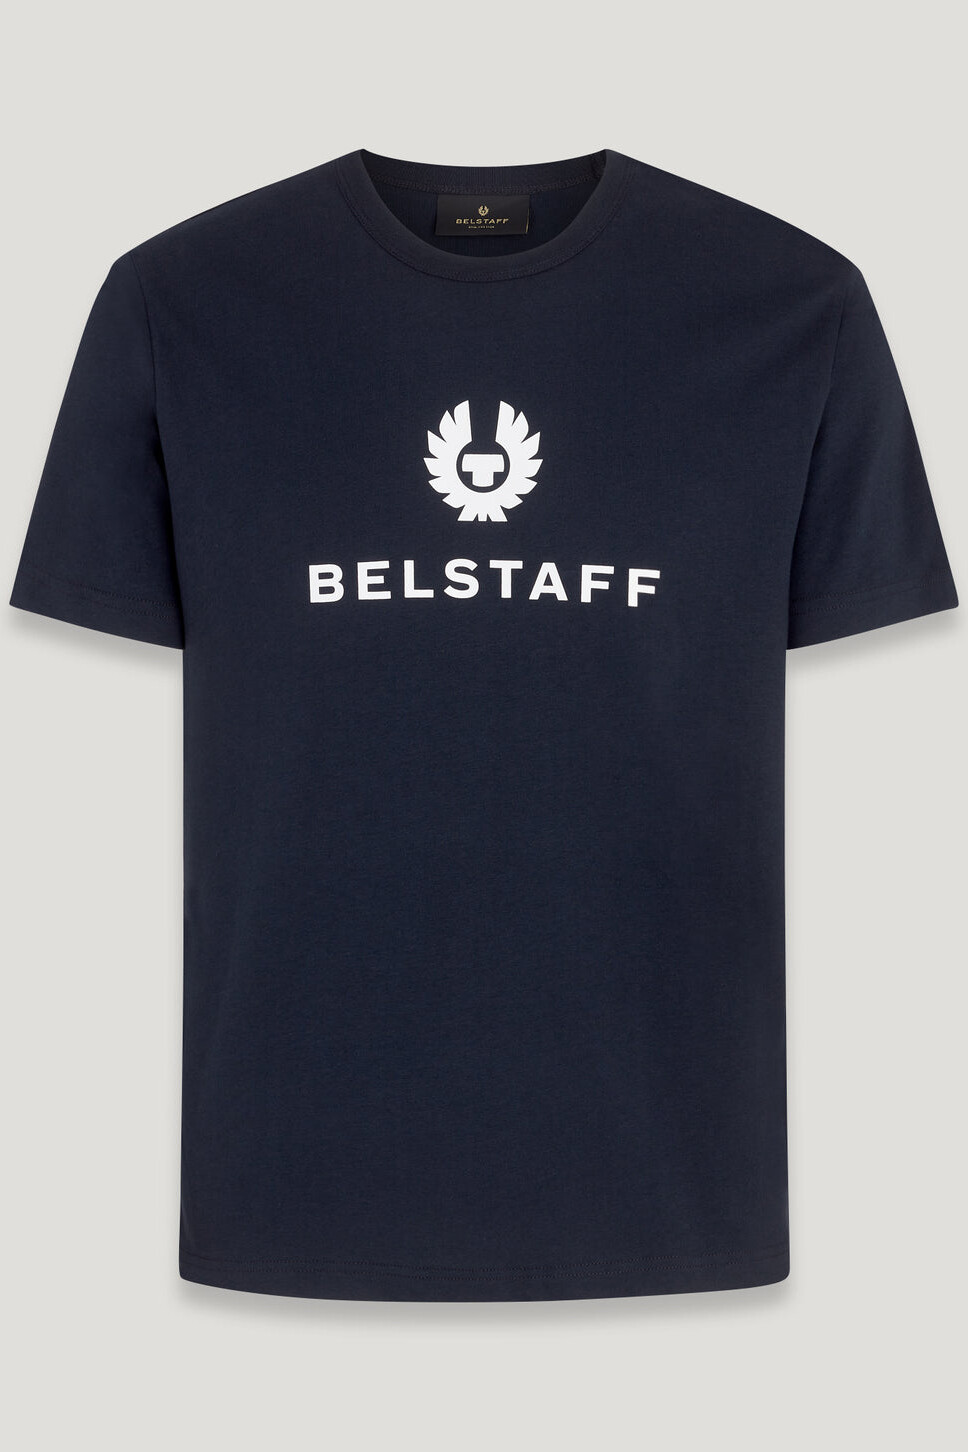 Belstaff Shirt SIGNATURE